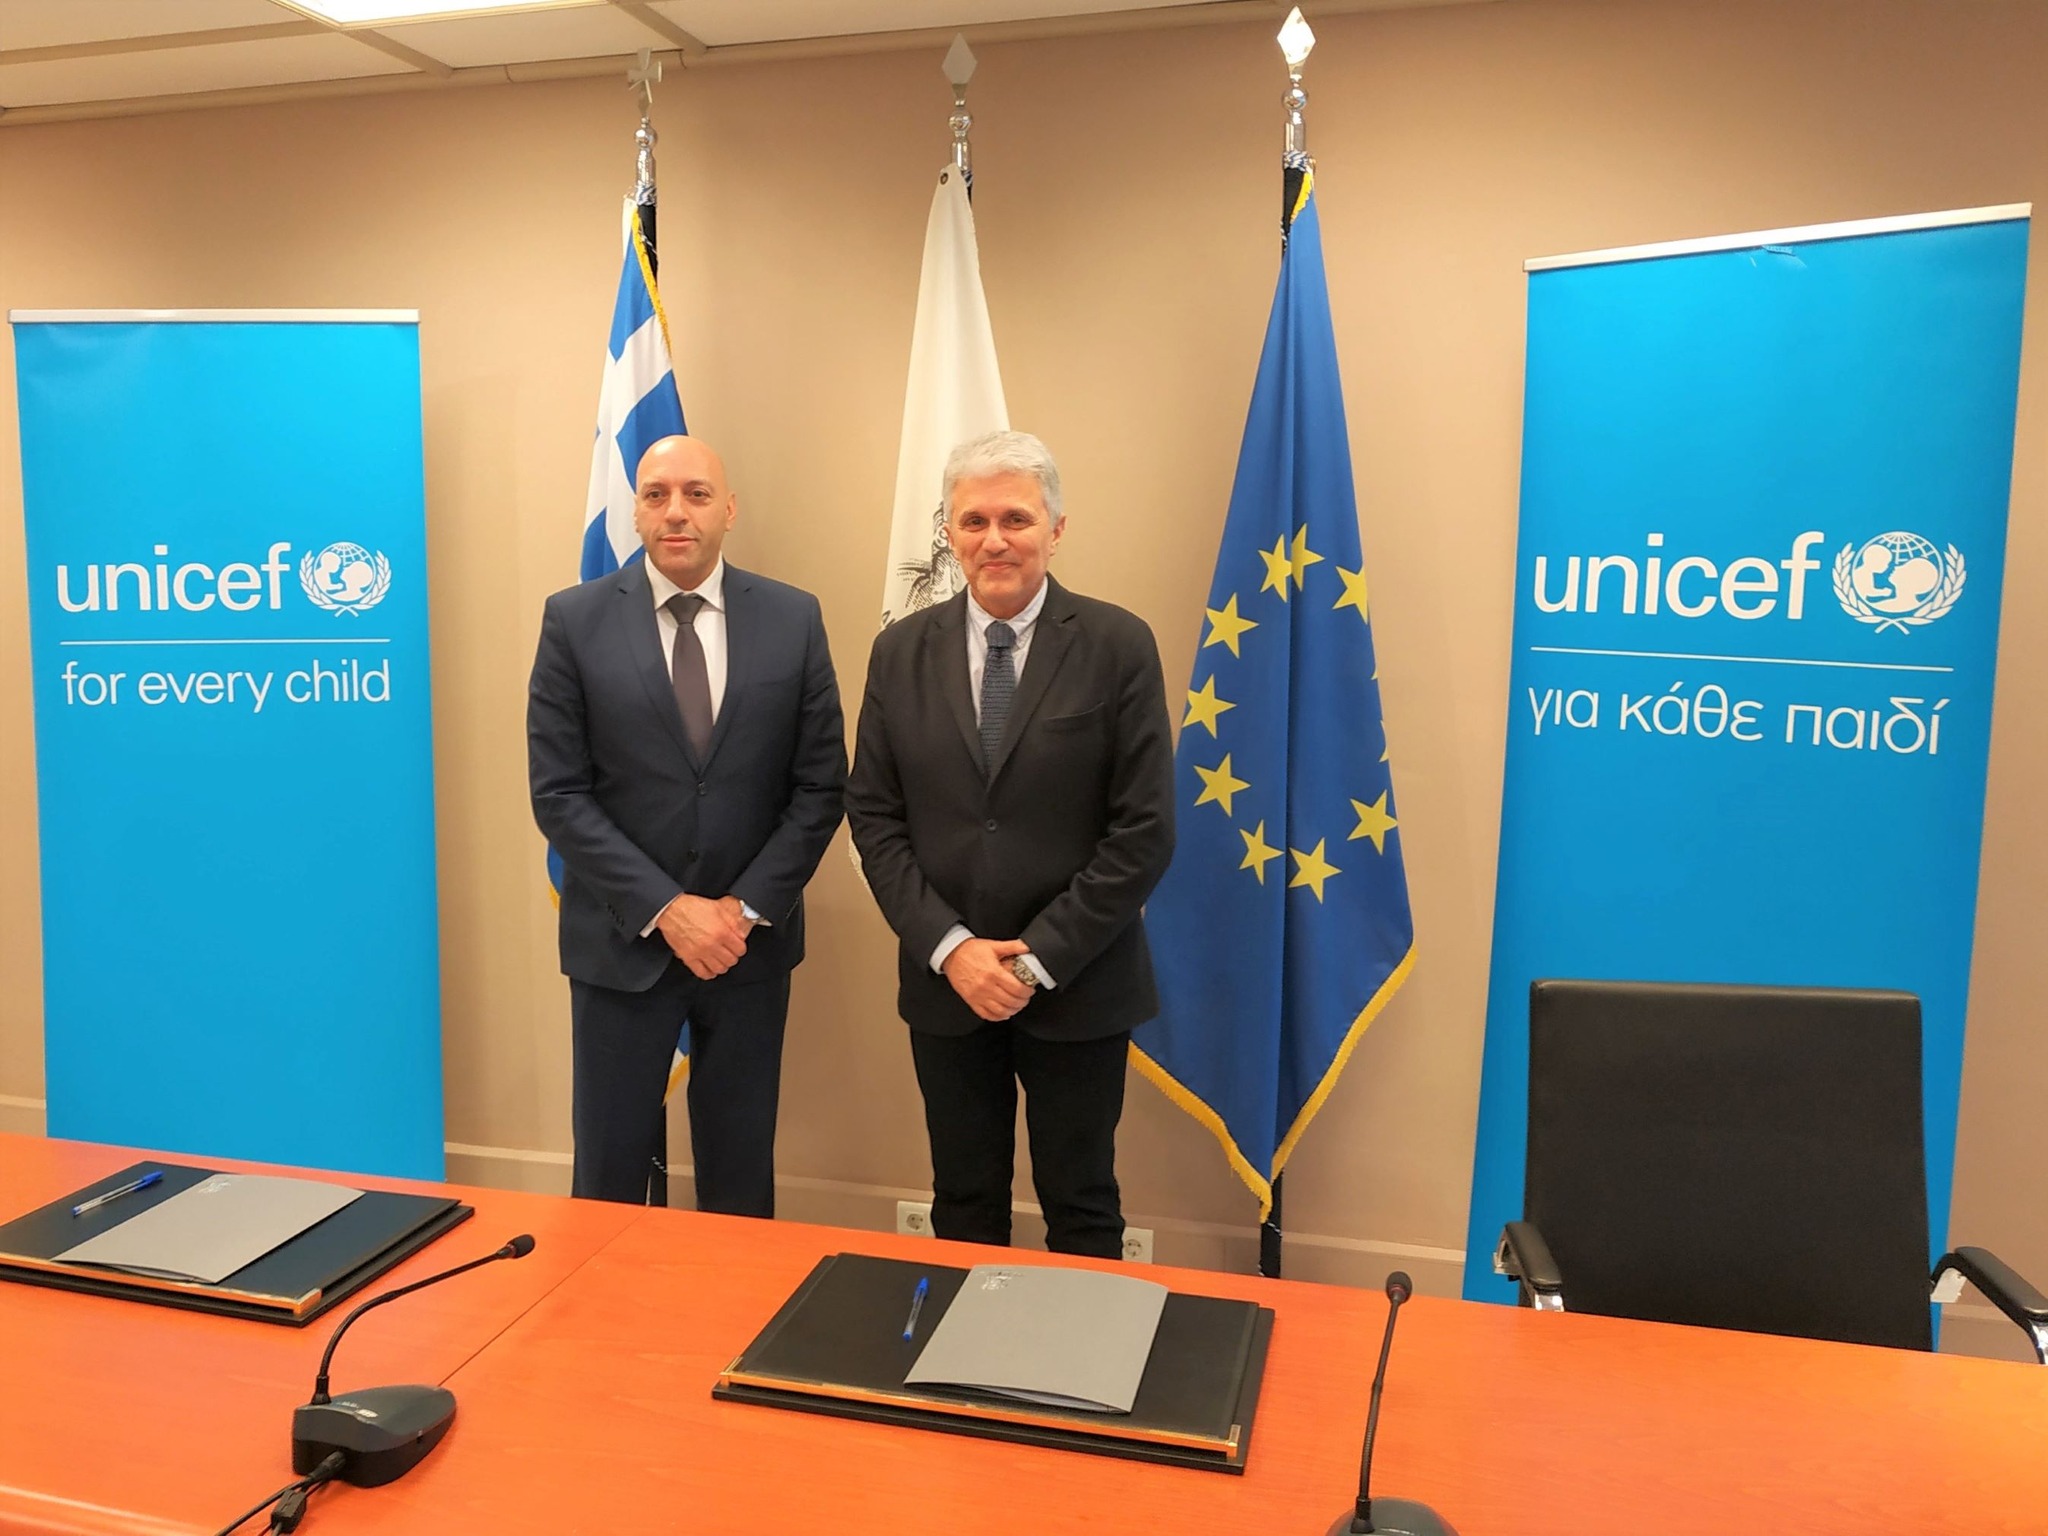 ΔΠΘ: Υπογραφή Συμφώνου Συνεργασίας με την UNICEF για τη δημιουργία ενός Κέντρου για τα Δικαιώματα του Παιδιού στο ΔΠΘ